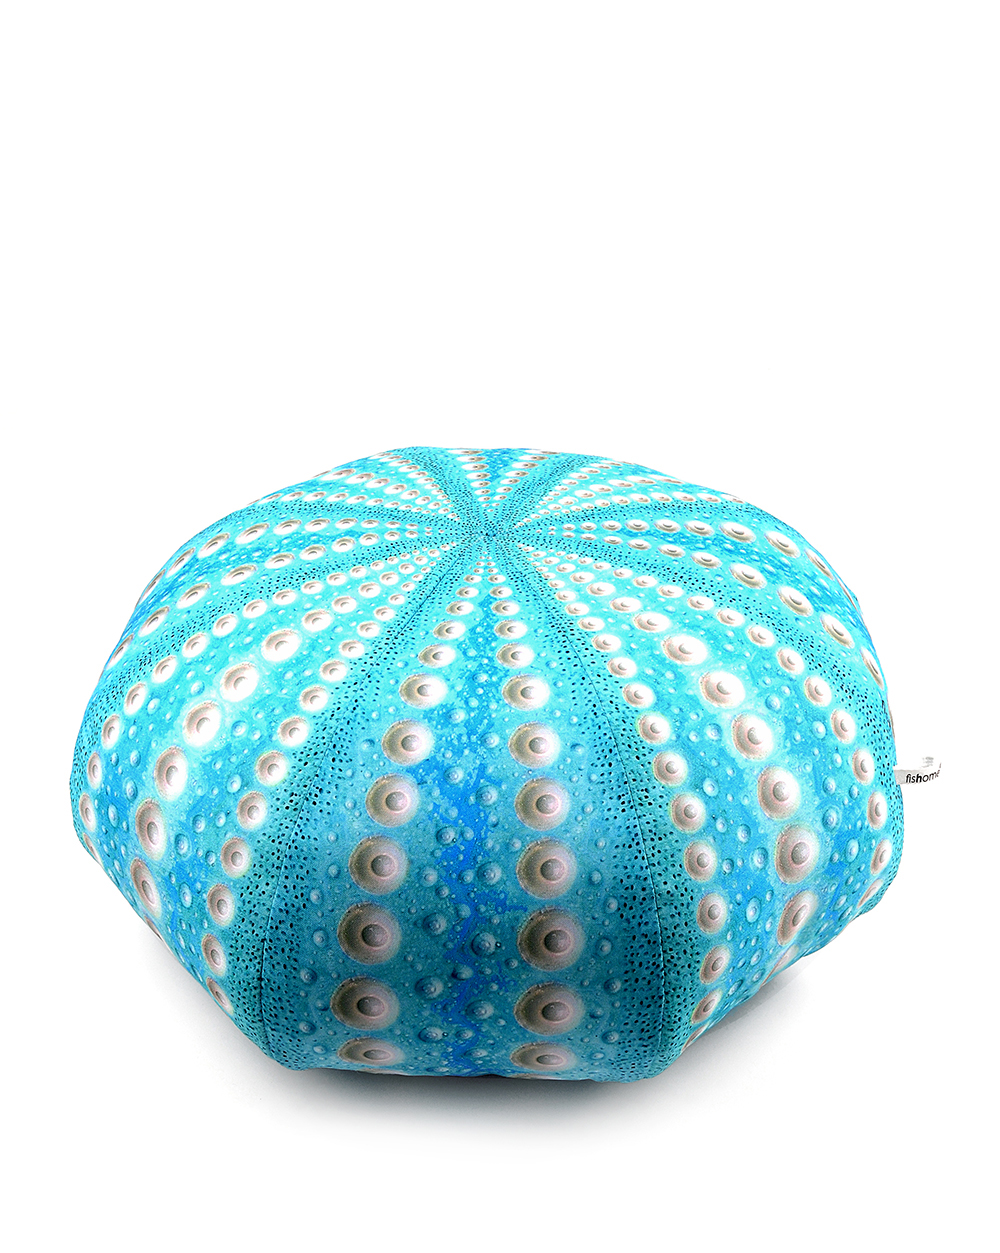 urchin pillow / αχινός μαξιλάρι